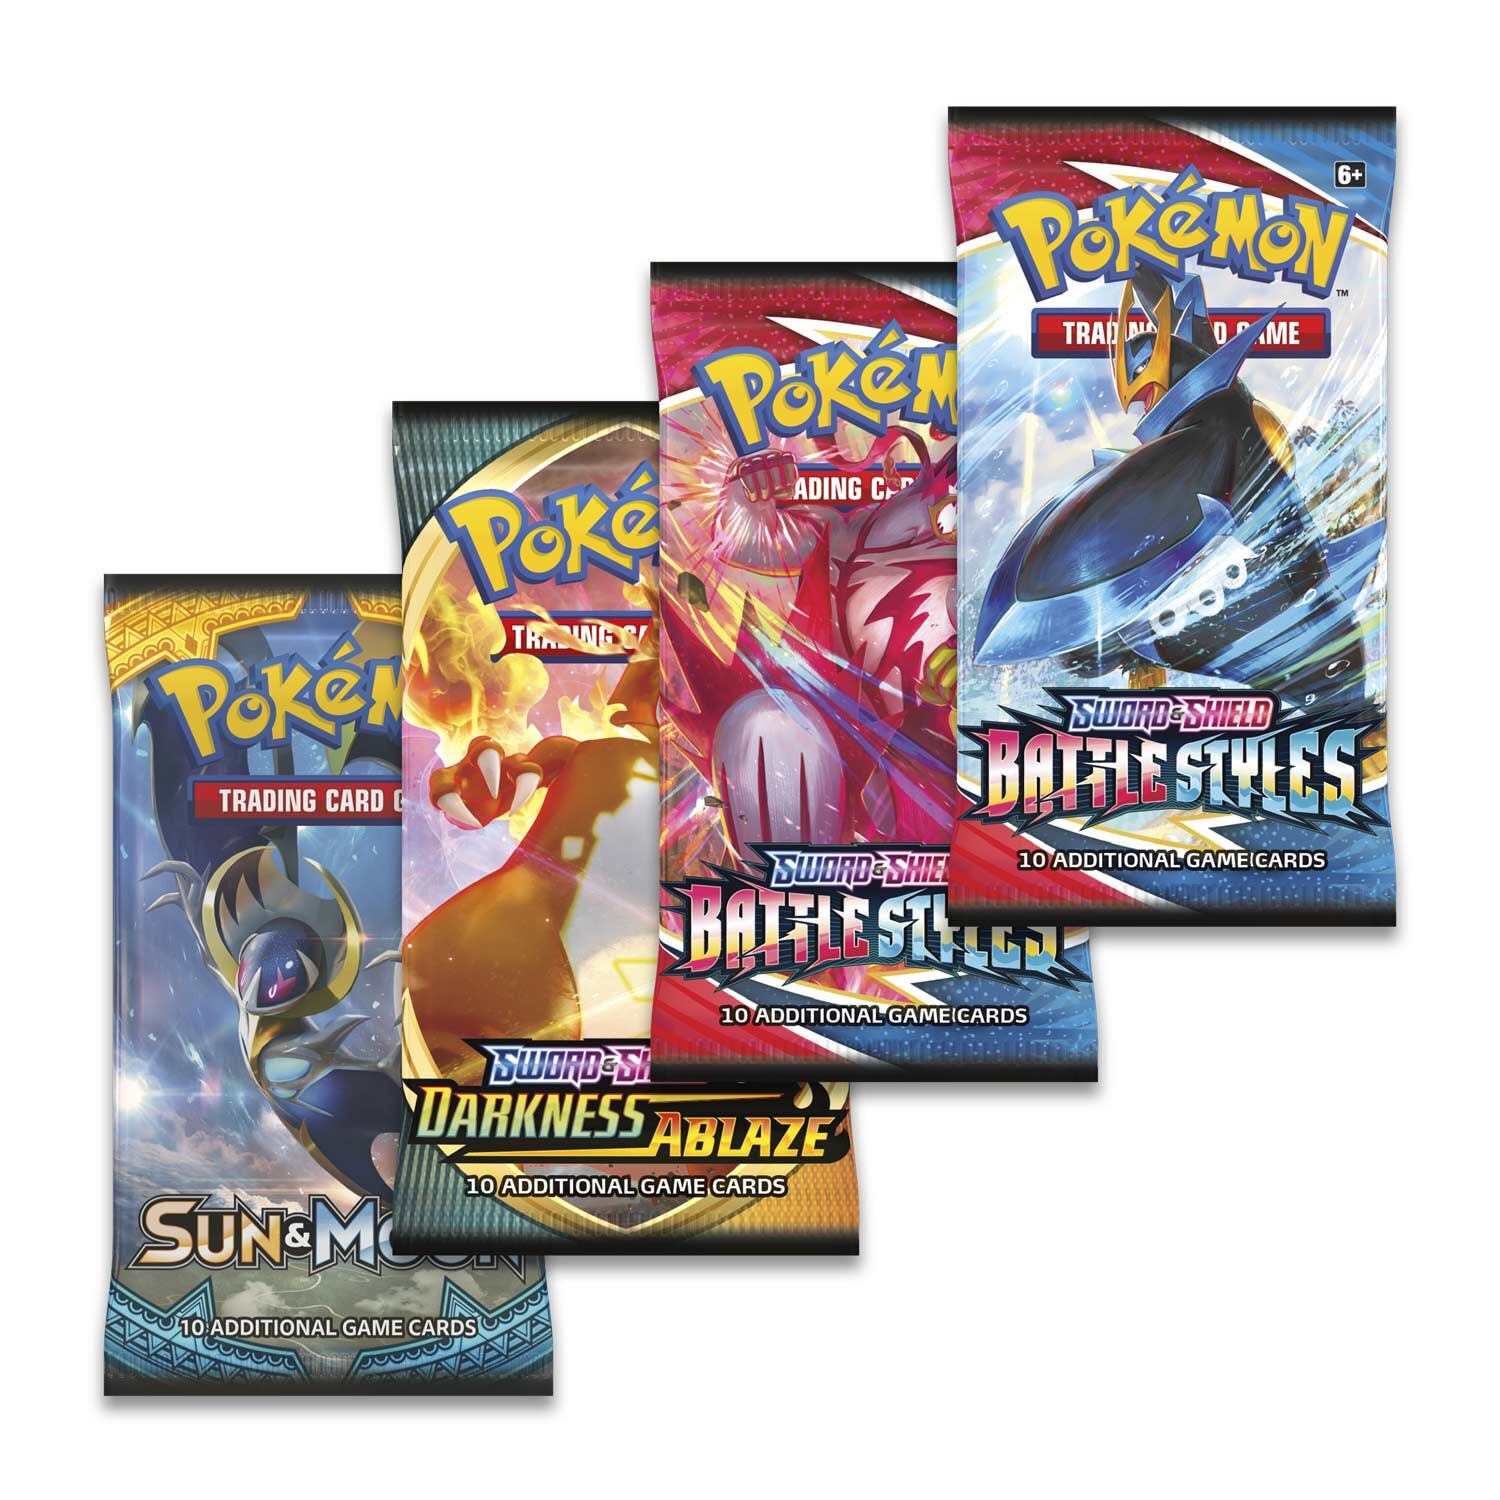 Pokémon Galarian Rapidash V Collection Box - EN